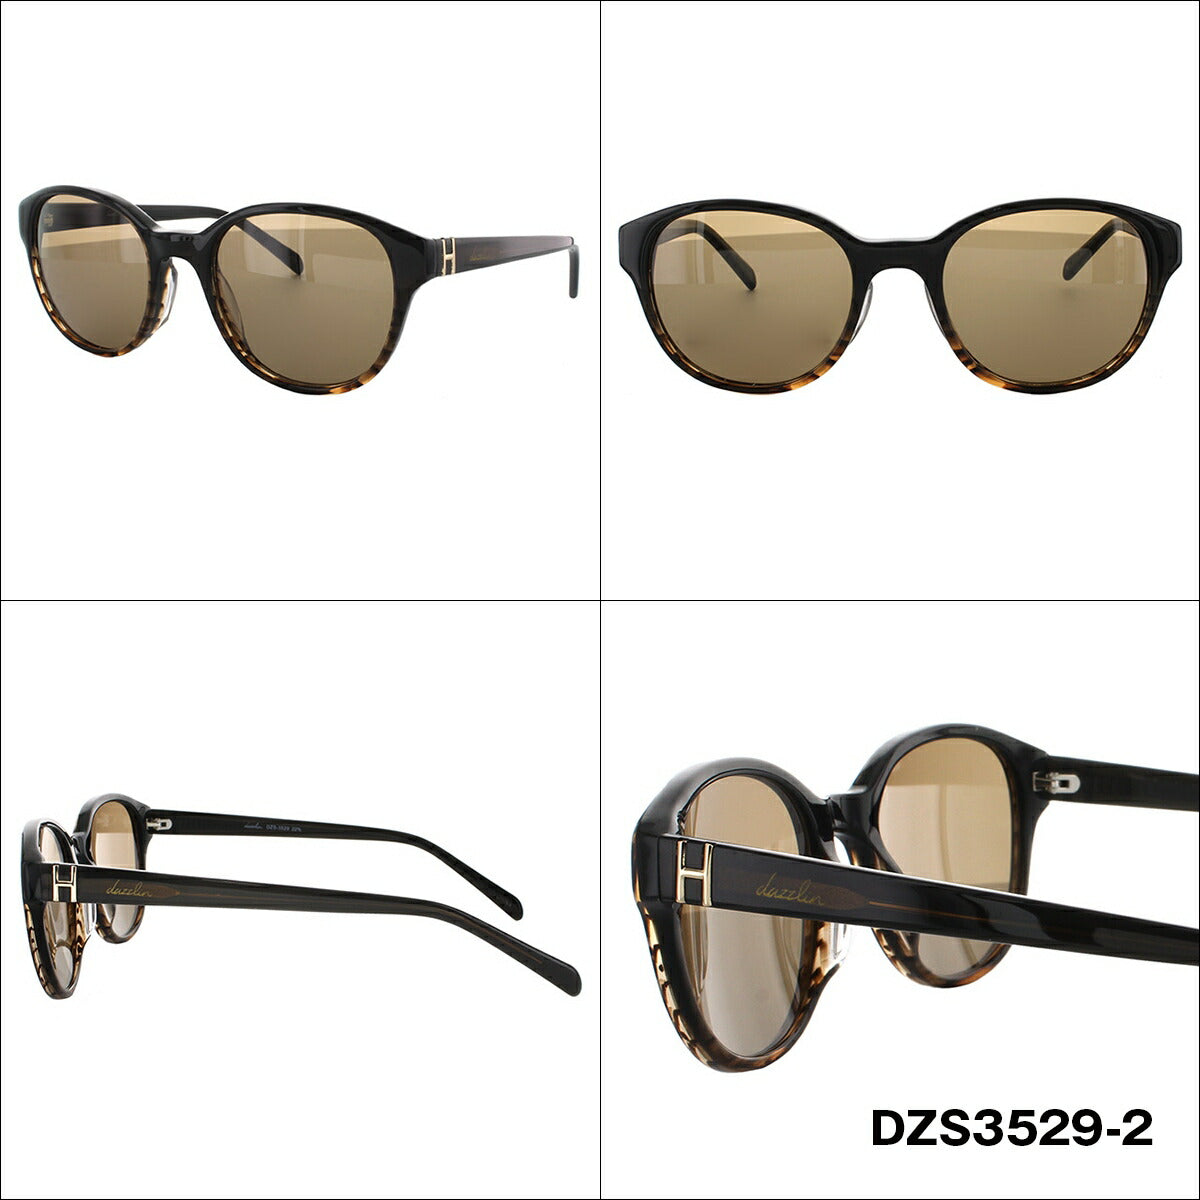 レディース サングラス dazzlin ダズリン DZS 3529 全3色 51サイズ アジアンフィット 女性 UVカット 紫外線 対策 ブランド 眼鏡 メガネ アイウェア 人気 おすすめ ラッピング無料